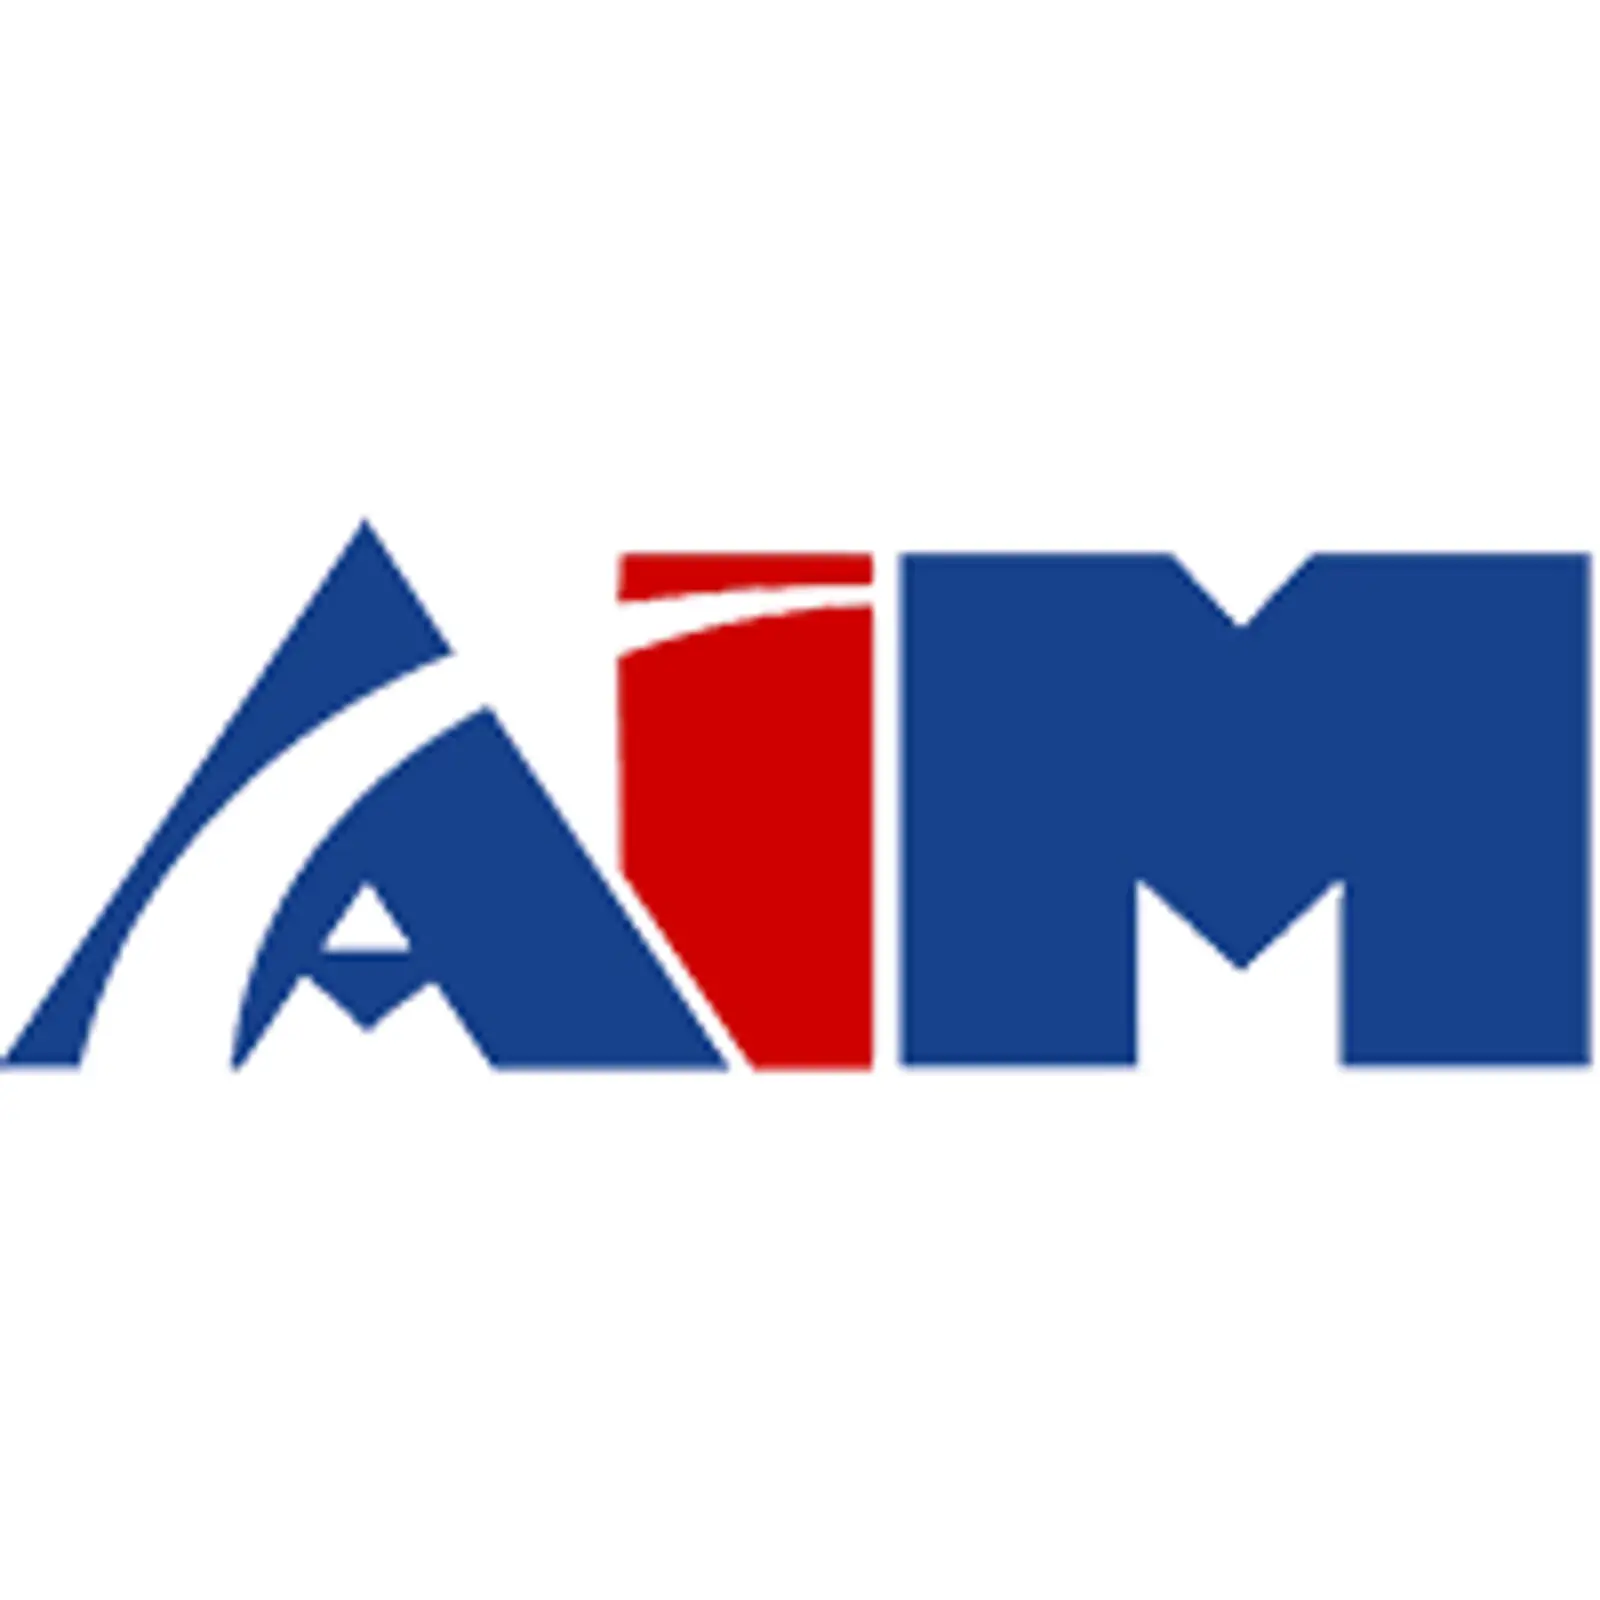 Aim Transportation Solutions logo